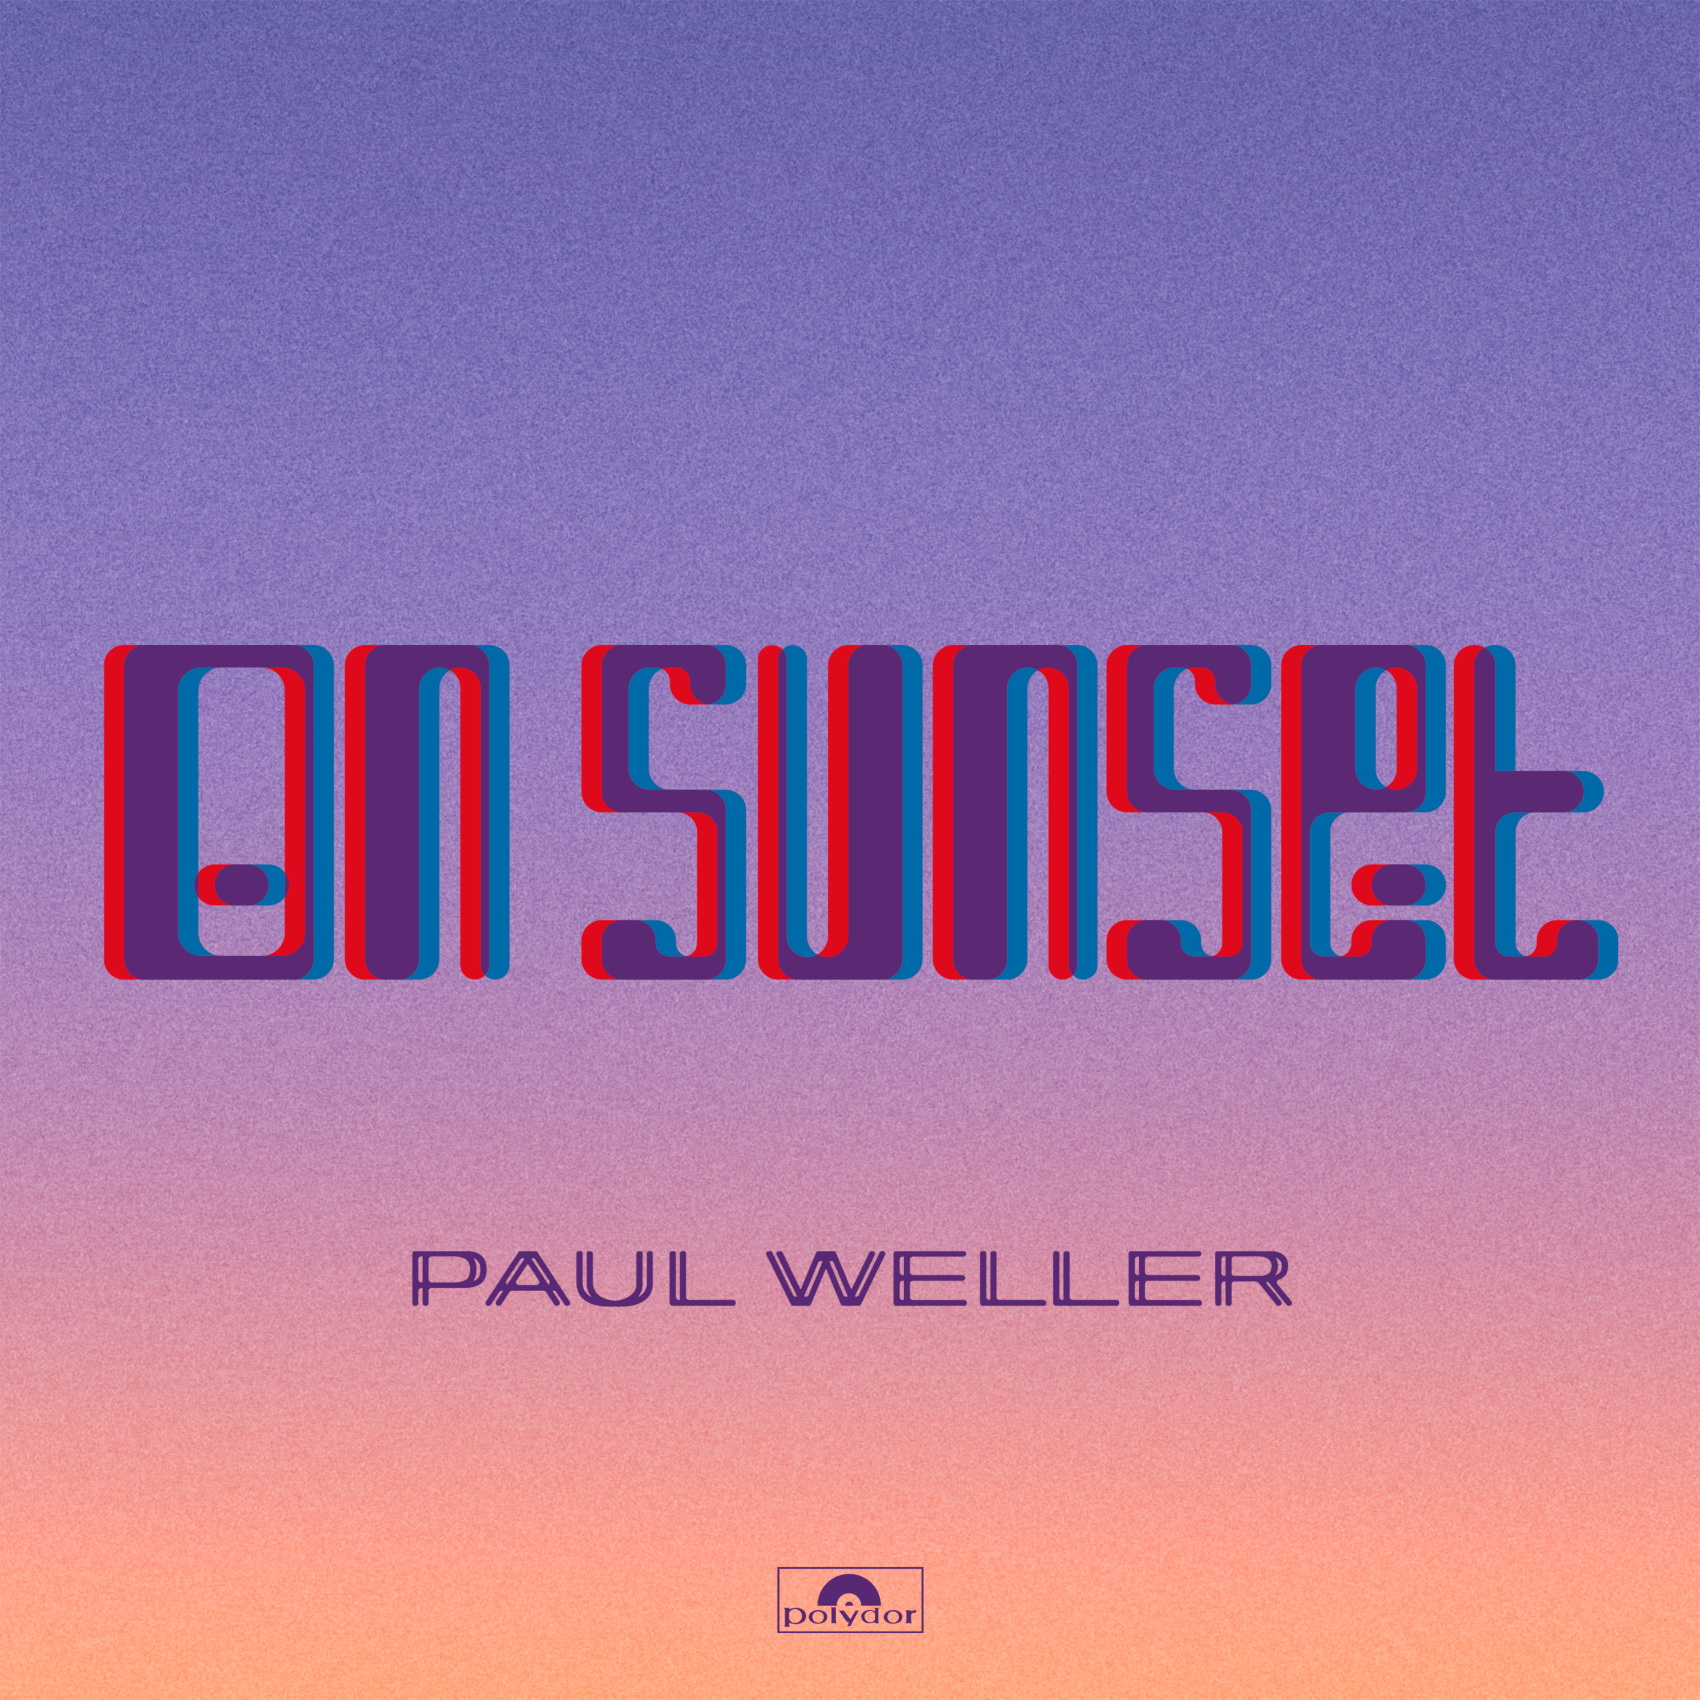 Paul Weller mknie do przodu. Album „On Sunstet” już dostępny